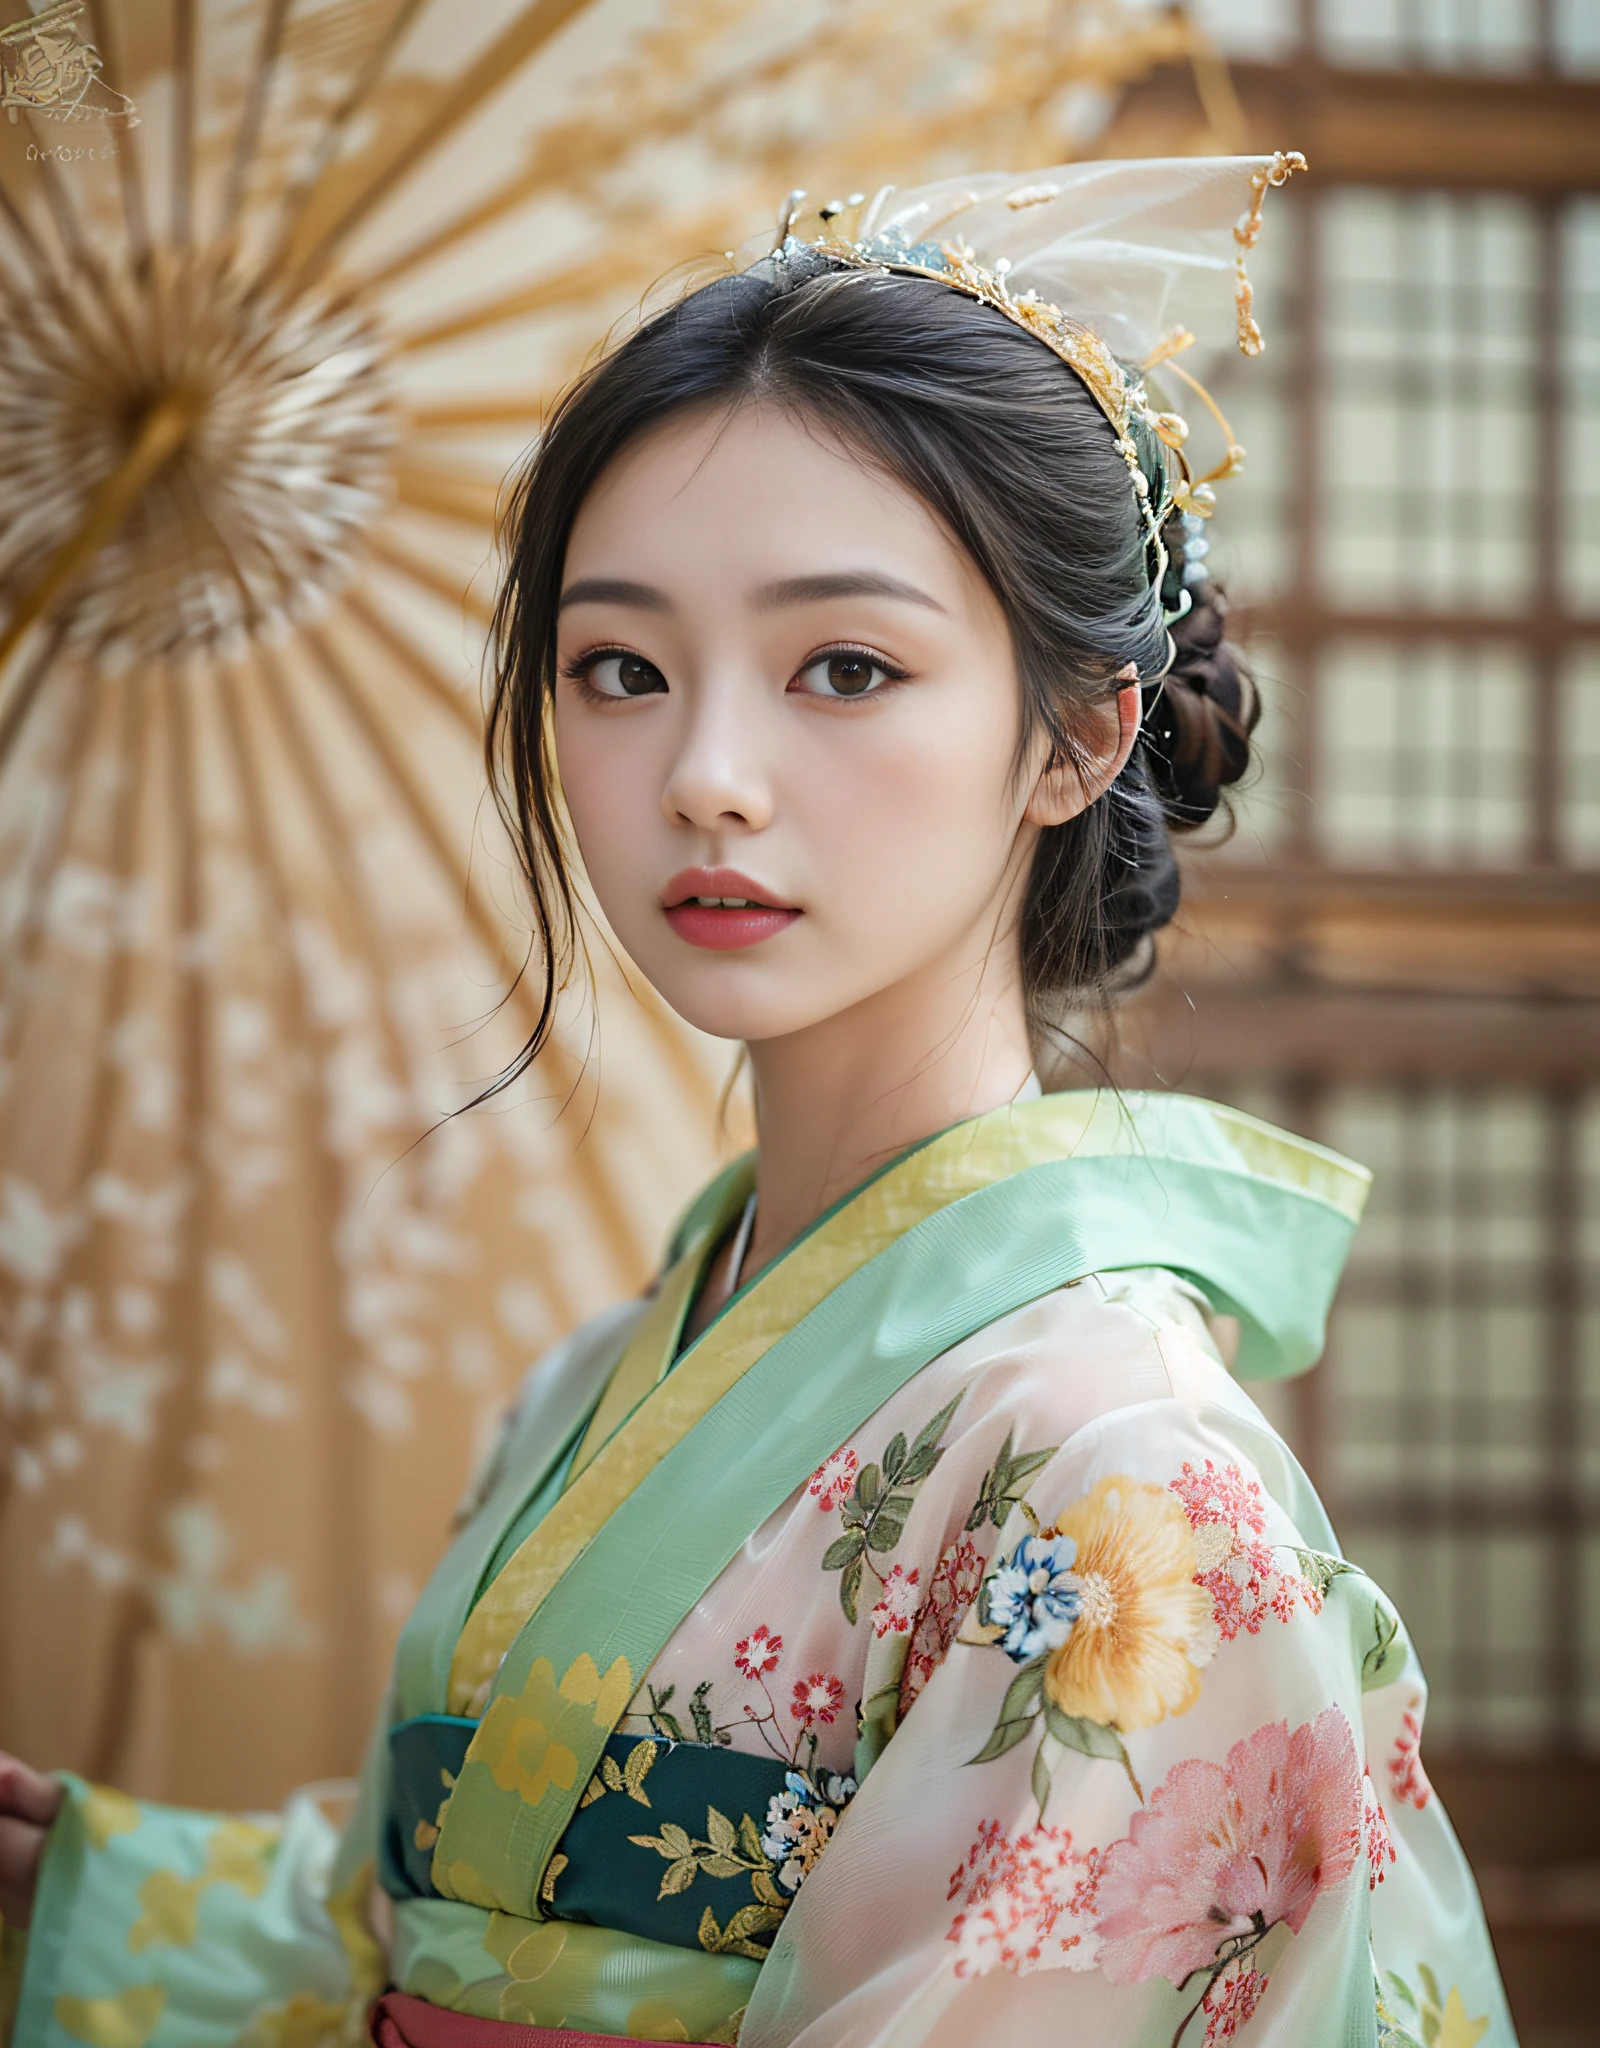 (Красивые модели в Японии, реклама кимоно, красивые прямые длинные черные волосы), Один, ((лицу 80% красота и элегантность, 20% красивая и милая:1.5)), (она is a model for half Eastern Europe and Asia), Ясные глаза, (подробные глаза, светло-зеленые глаза, яркие ученики), двойные веки, (сексуальные губы небольшой толщины:1.2), ((Тонкое нижнее белье с ультрадетализацией и невероятно высоким разрешением:1.2)), Высокодетализированные текстуры лица, эффектная форма тела, фигуристая и очень привлекательная женщина, Цветная фотография в формате RAW с высоким разрешением для профессионального фото, ПЕРЕРЫВ Ultra High Resolution Textures, Рендеринг тела в высоком разрешении, большой eyes, беспрецедентный шедевр на свете, невероятно высокое разрешение, Супер подробный, потрясающая керамическая кожа, ПЕРЕРЫВ ((Повернитесь, чтобы показать выкройку кимоно.:1.5)), ((она「В их войне」Ношение кимоно, которое надевают под кимоно, называется:1.5)), ((Это кимоно изготовлено из белой тонкой ткани.:1.2)), (Потому что это кимоно такое тонкое、Вы можете видеть сквозь ее красивый оттенок кожи), (Изысканное классическое японское нижнее белье.), ((Узор бледно-розовый..、Текущая вода):1.2), ((Изысканно элегантное очень тонкое кимоно.)), (утро、Снято в комнате в японском стиле с татами. (плетеная соломка) Напольное покрытие)) ПЕРЕРЫВ ((Лучшее качество, 8К)), Четкий фокус:1.2, (Слои-Вырезать, большой:1.2), (Красивая женщина с идеальной фигурой:1.4), (Красивый и элегантный вид сзади:1.3), Тонкая талия, (правильная форма руки:1.5), (выстрел в полный рост | ковбойский выстрел)